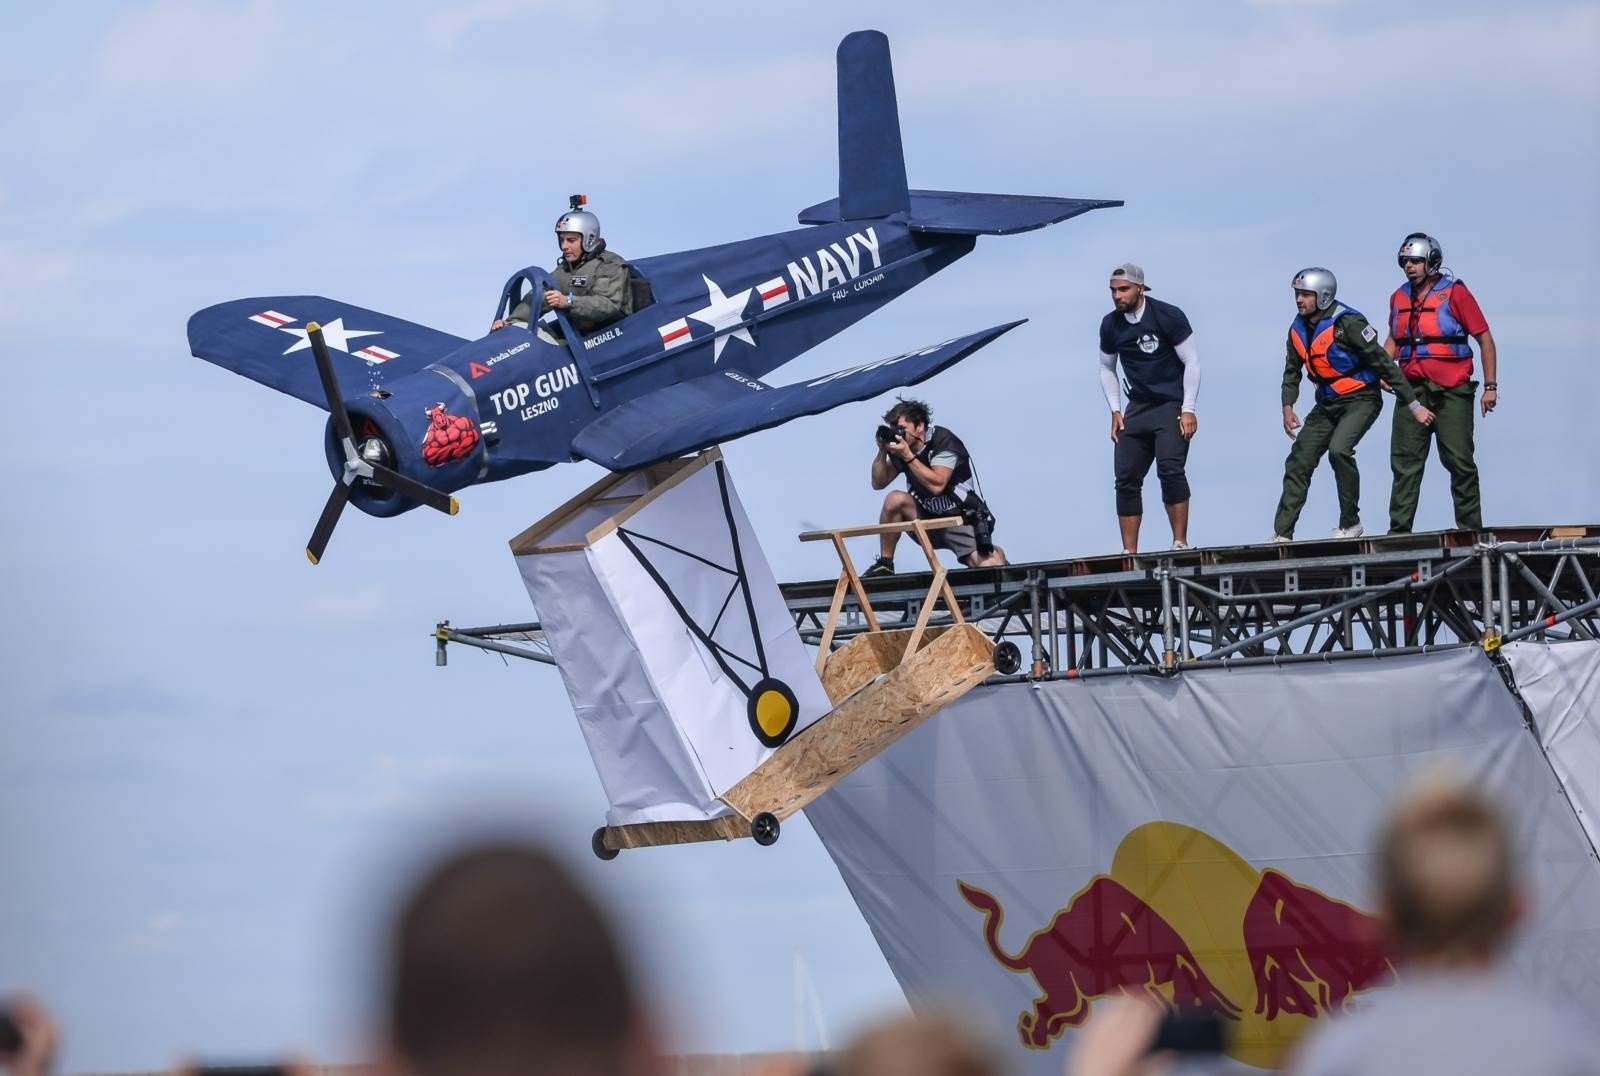 Kultowy konkurs Red Bull wraca do Gdyni na skwer Kościuszki